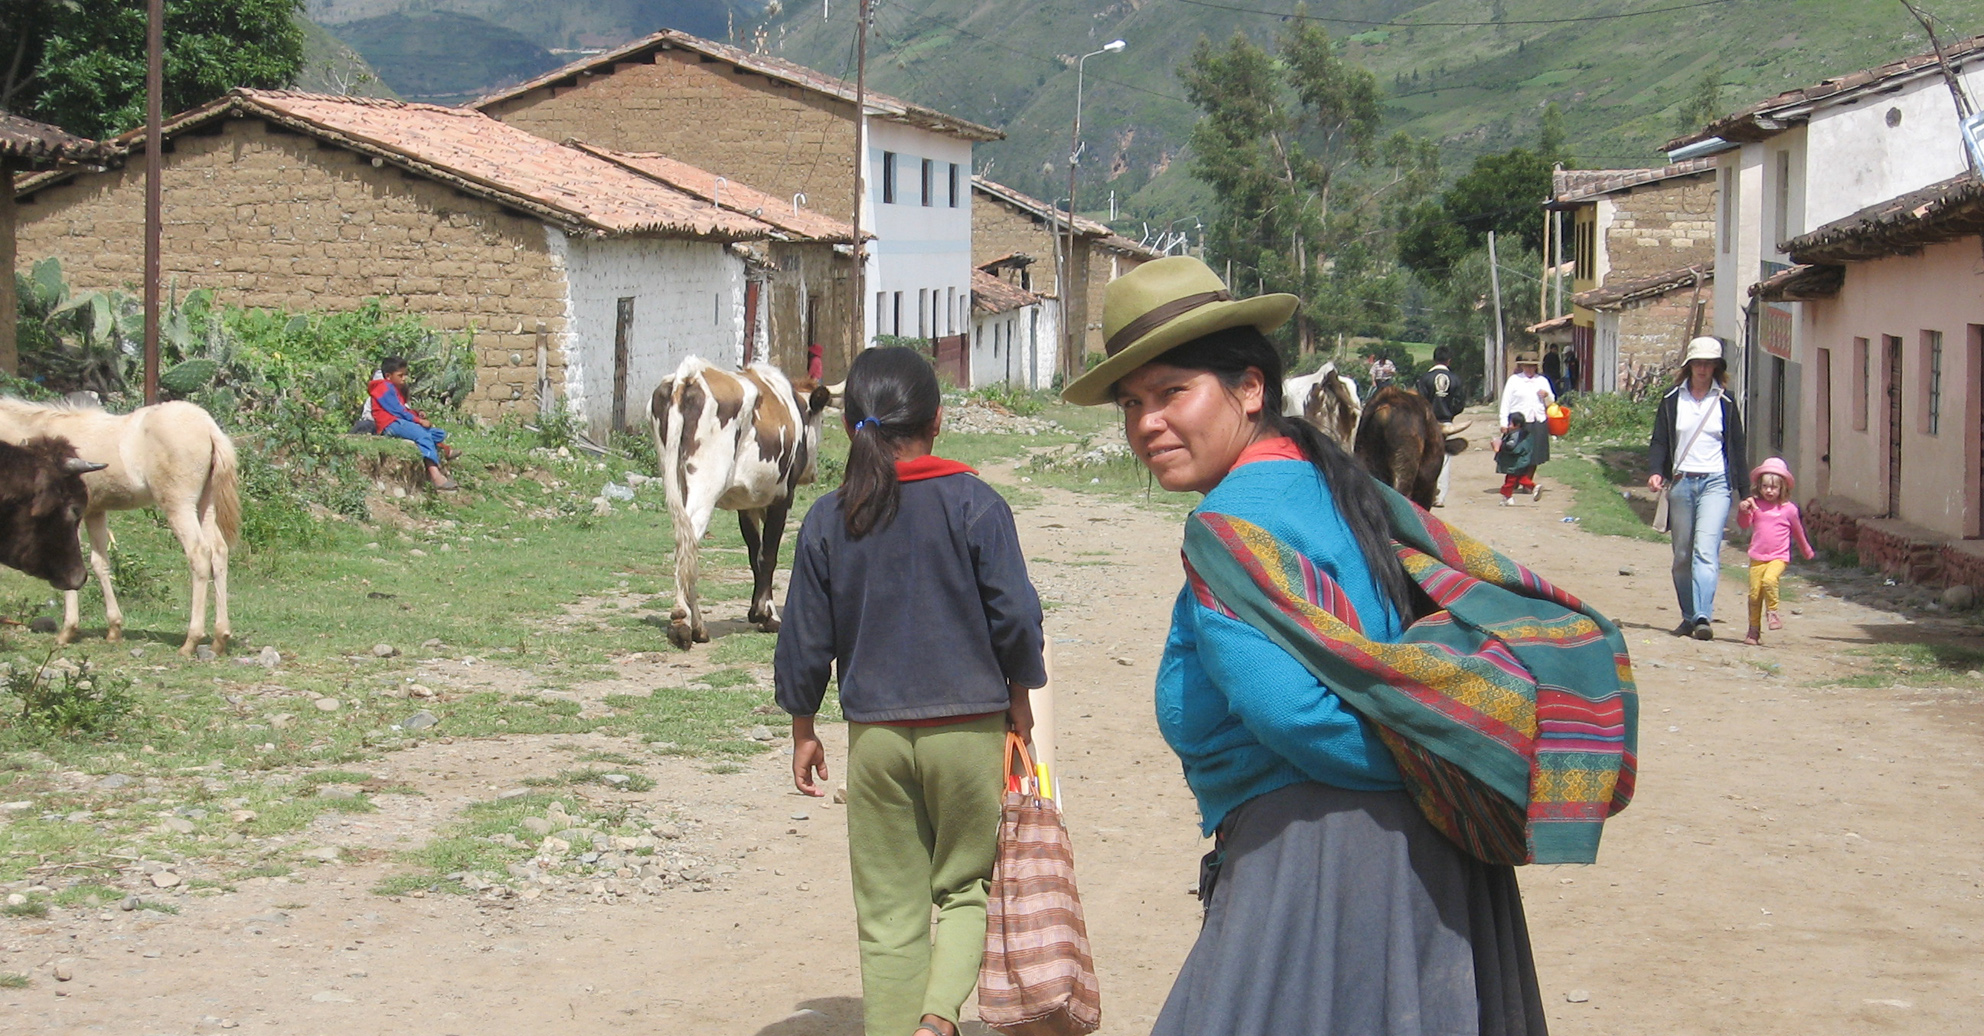 Impressionen aus Peru